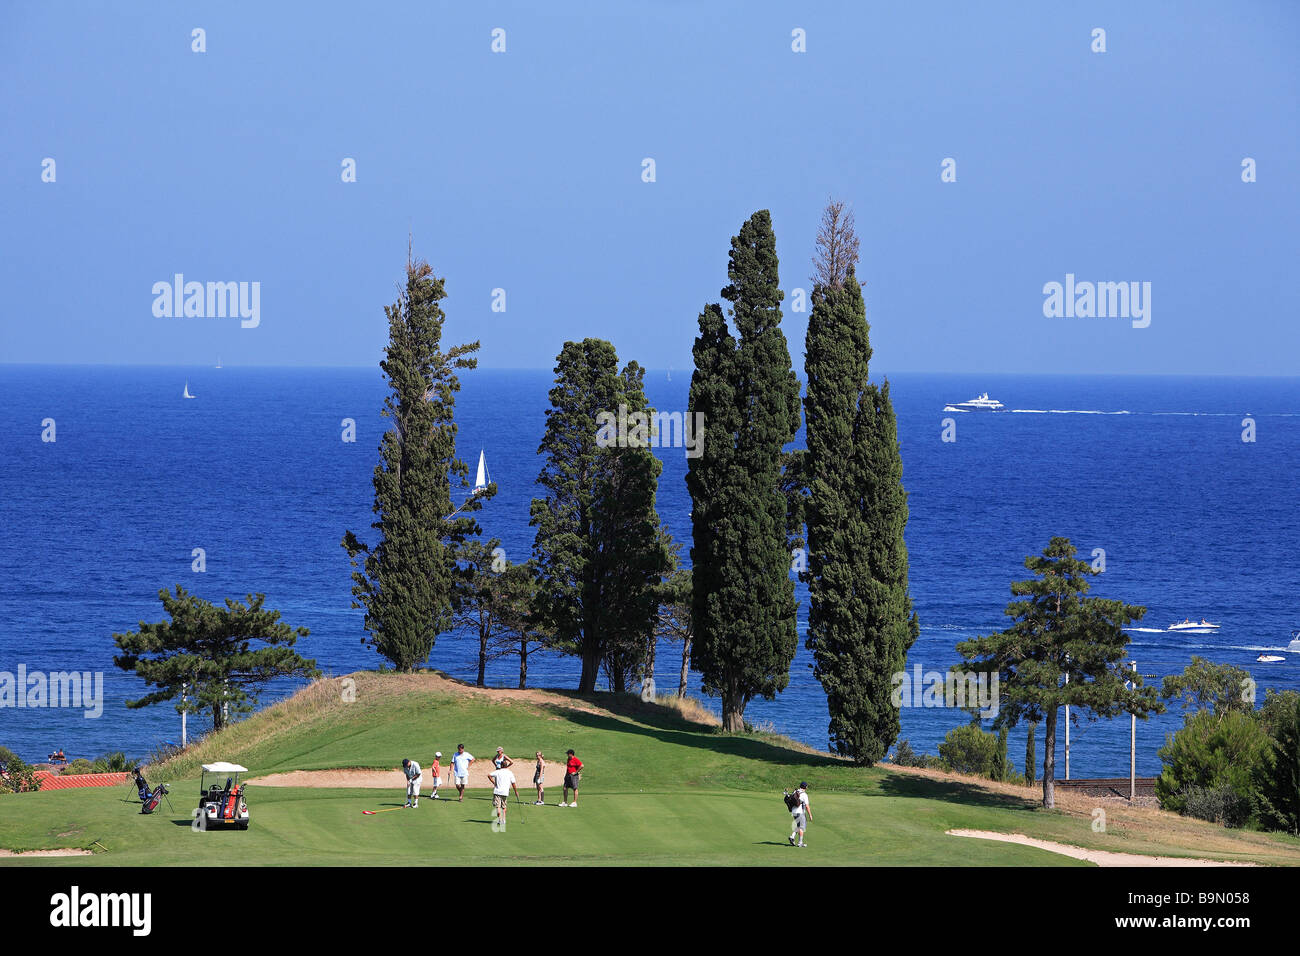 France, Var, Esterel Corniche, Agay village, Pierre et Vacances Cap Esterel  Golf Club Stock Photo - Alamy